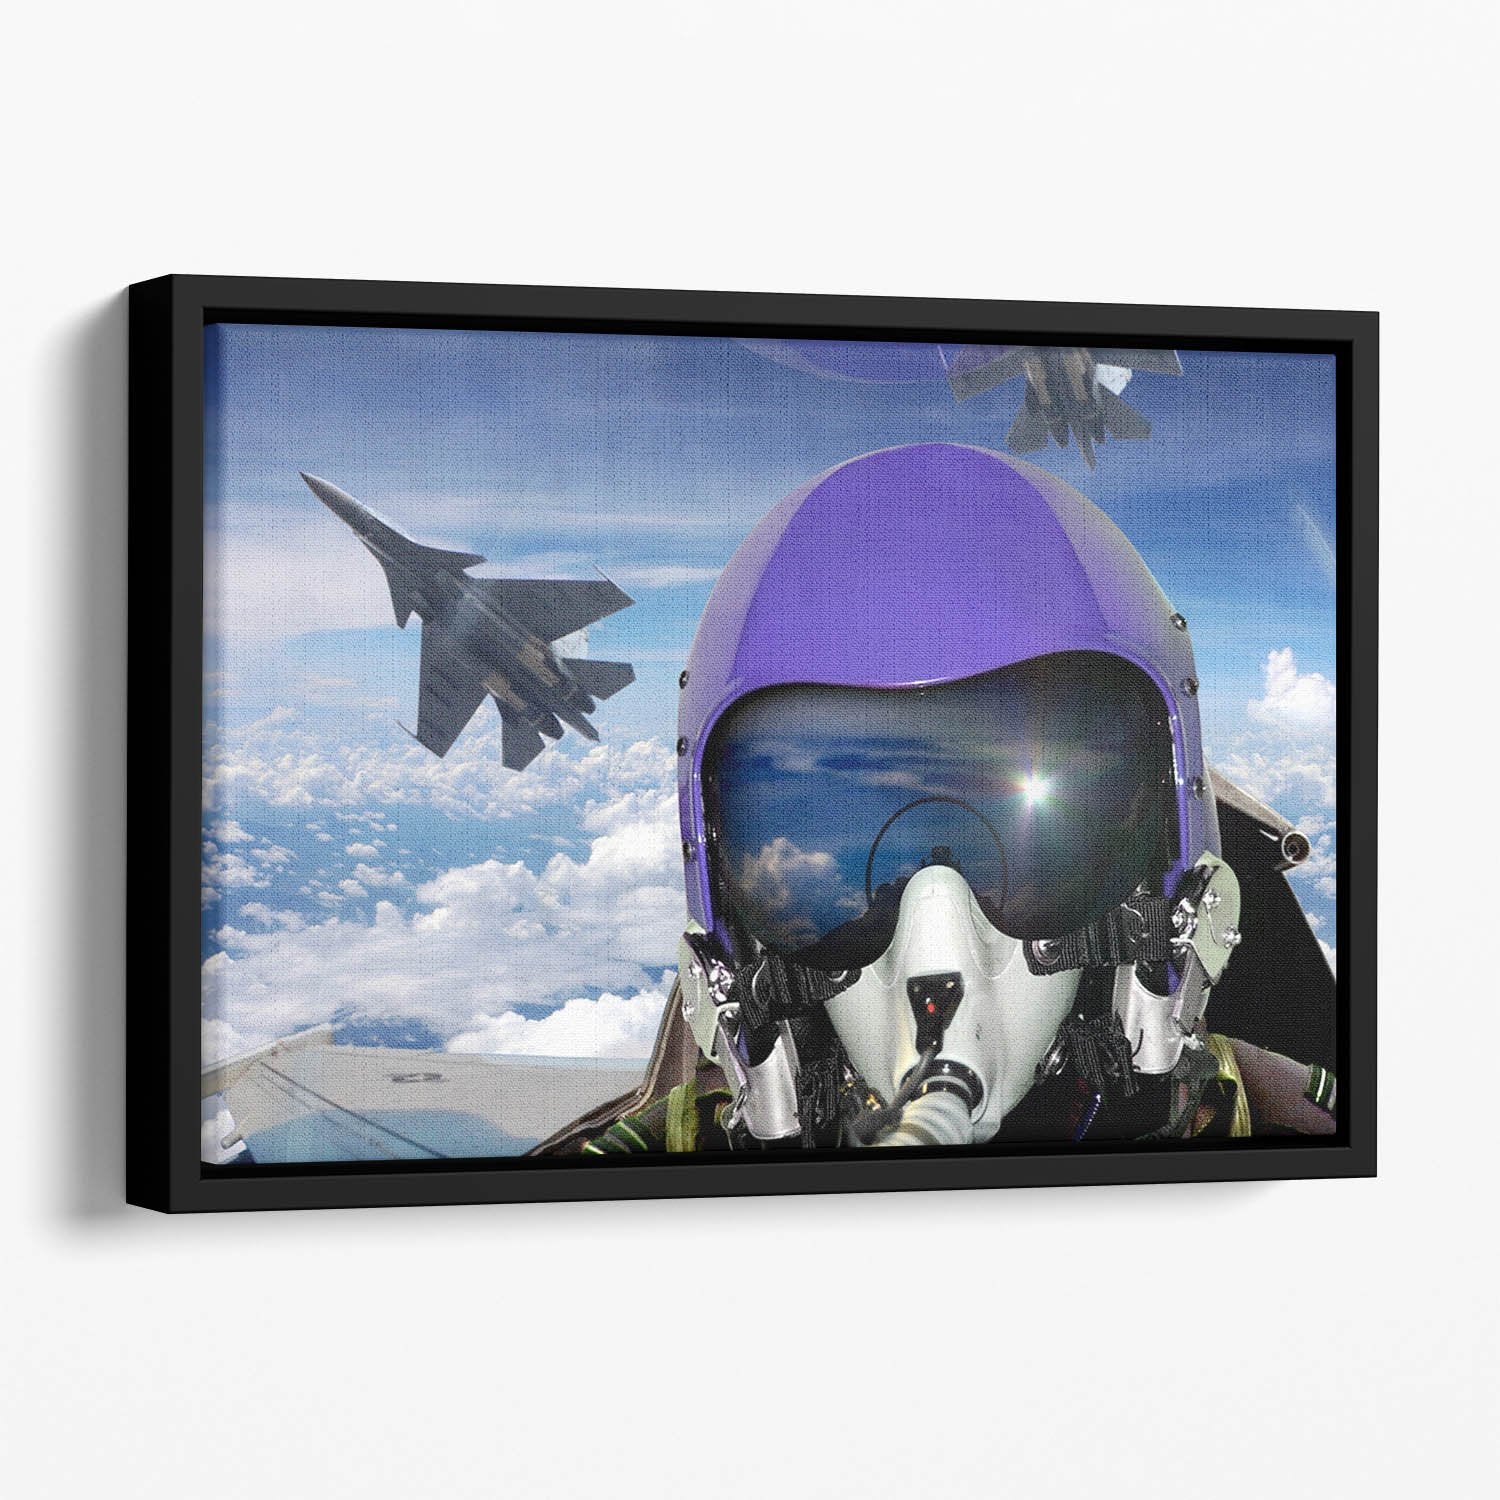 Jet fighter pilot cockpit view Floating Framed Canvas